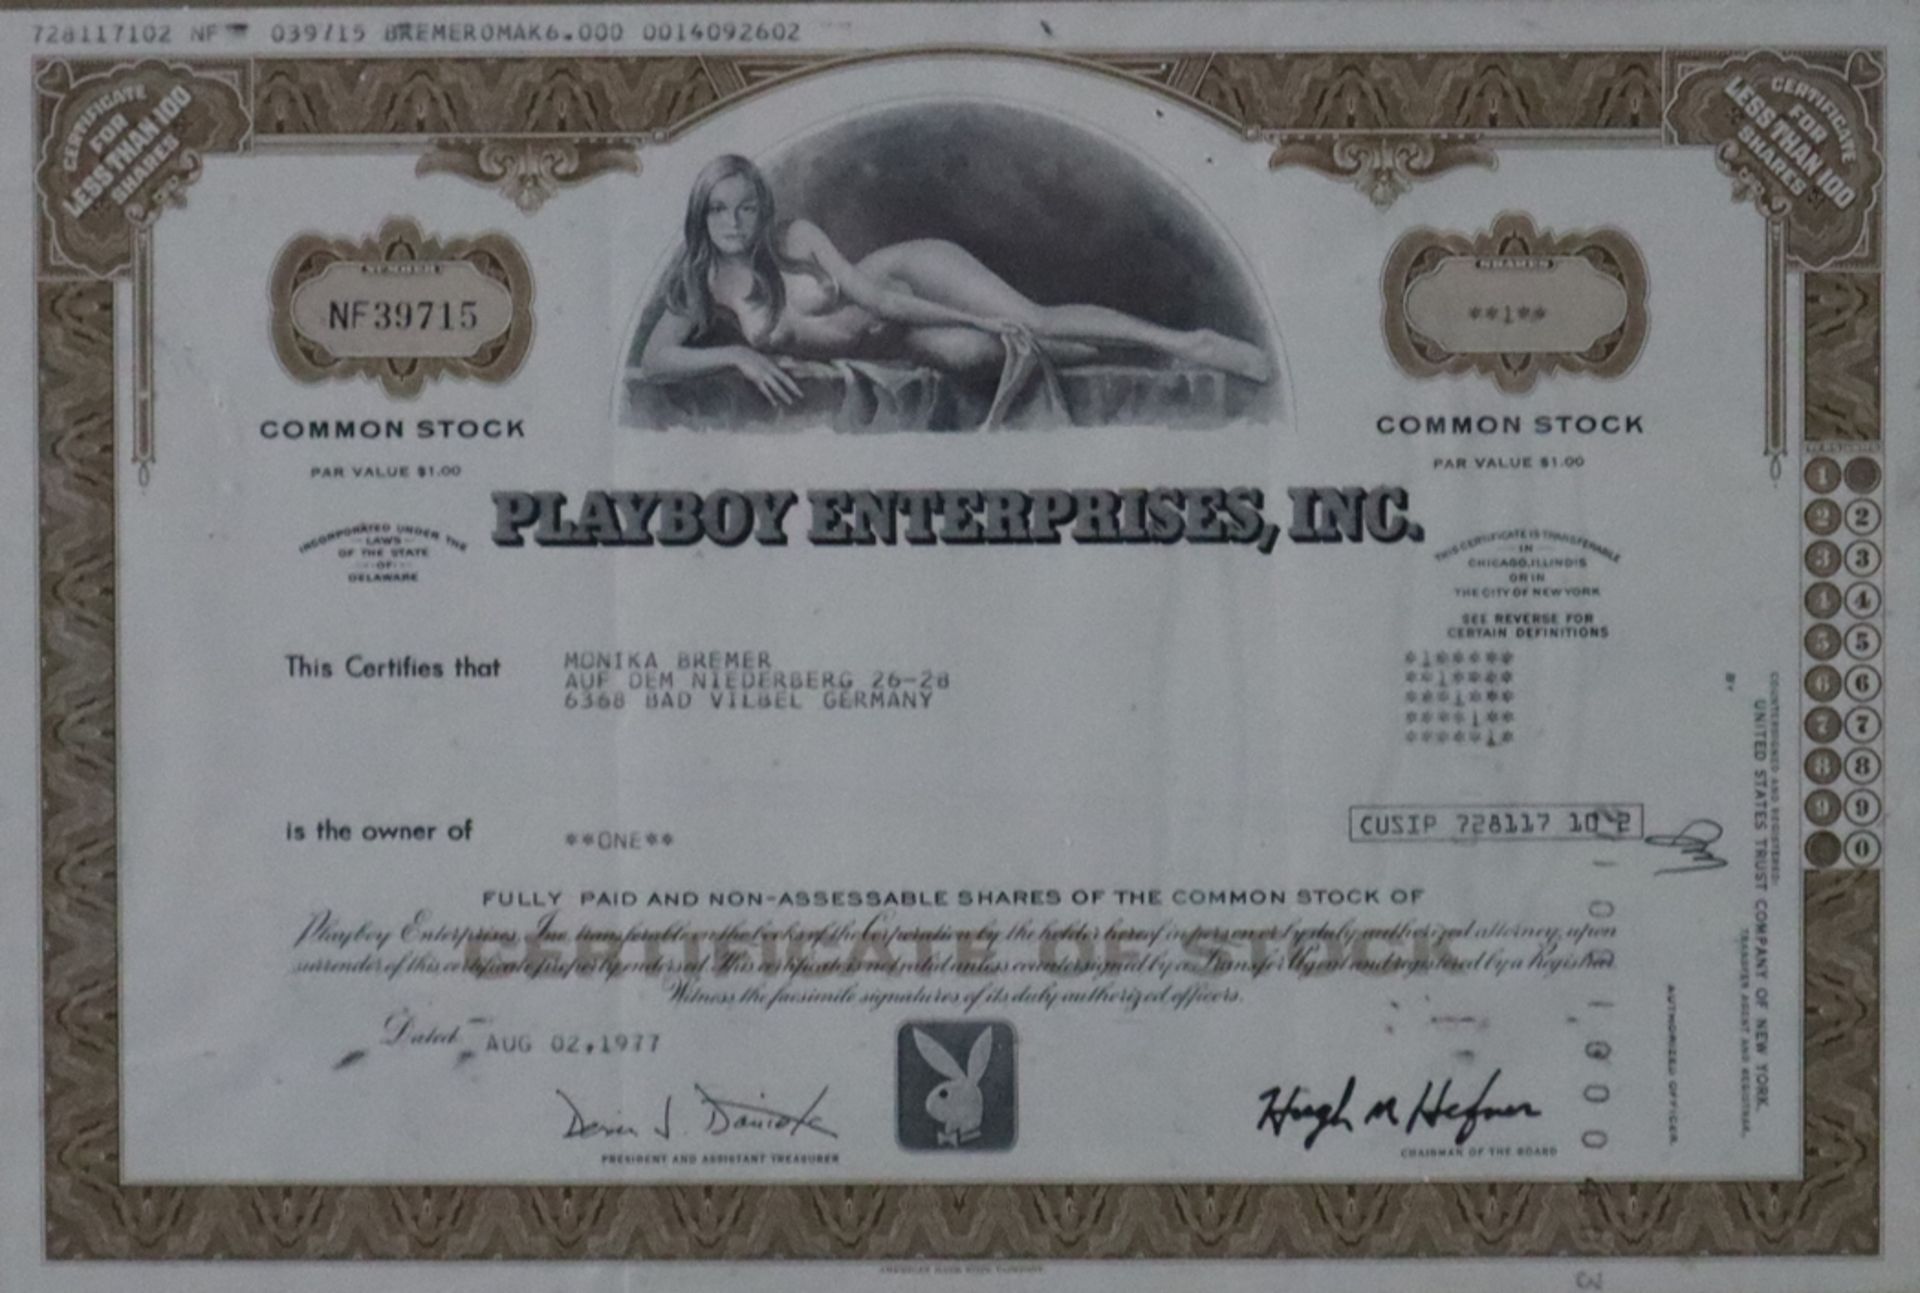 Wertpapier - Playboy Enterprises, Inc. No. NF 39715, datiert 1977, Common Stock, Par Value $1.00, m